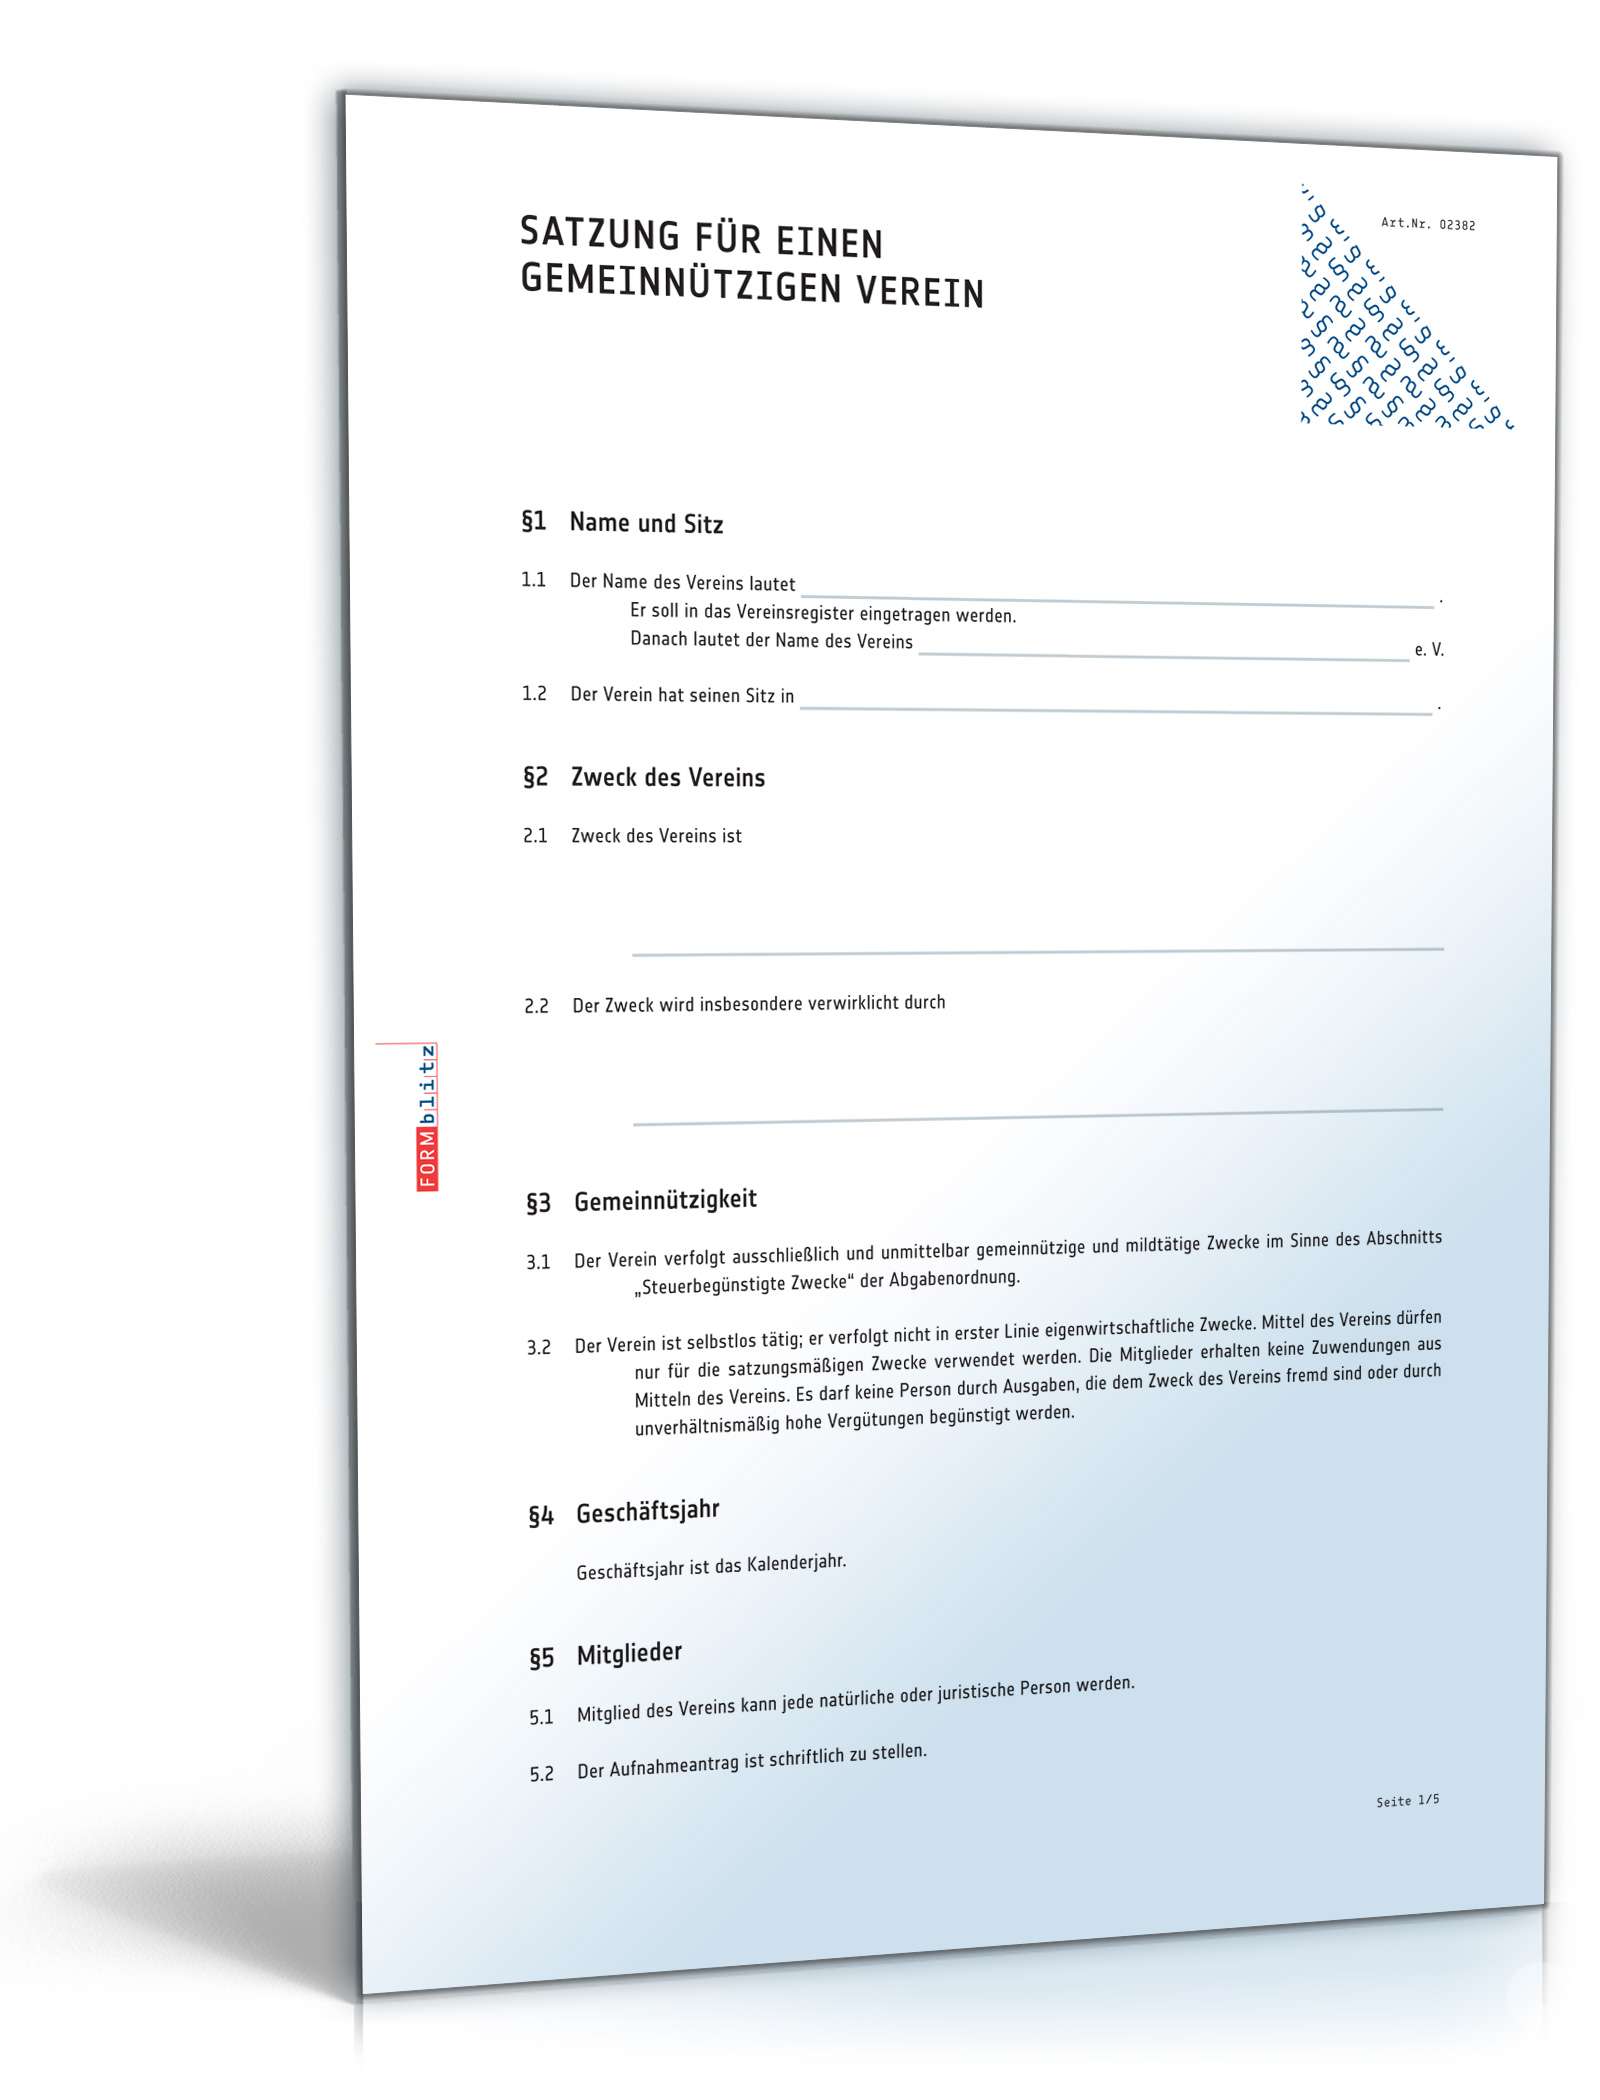 Satzung Gemeinnütziger Verein Muster Zum Download